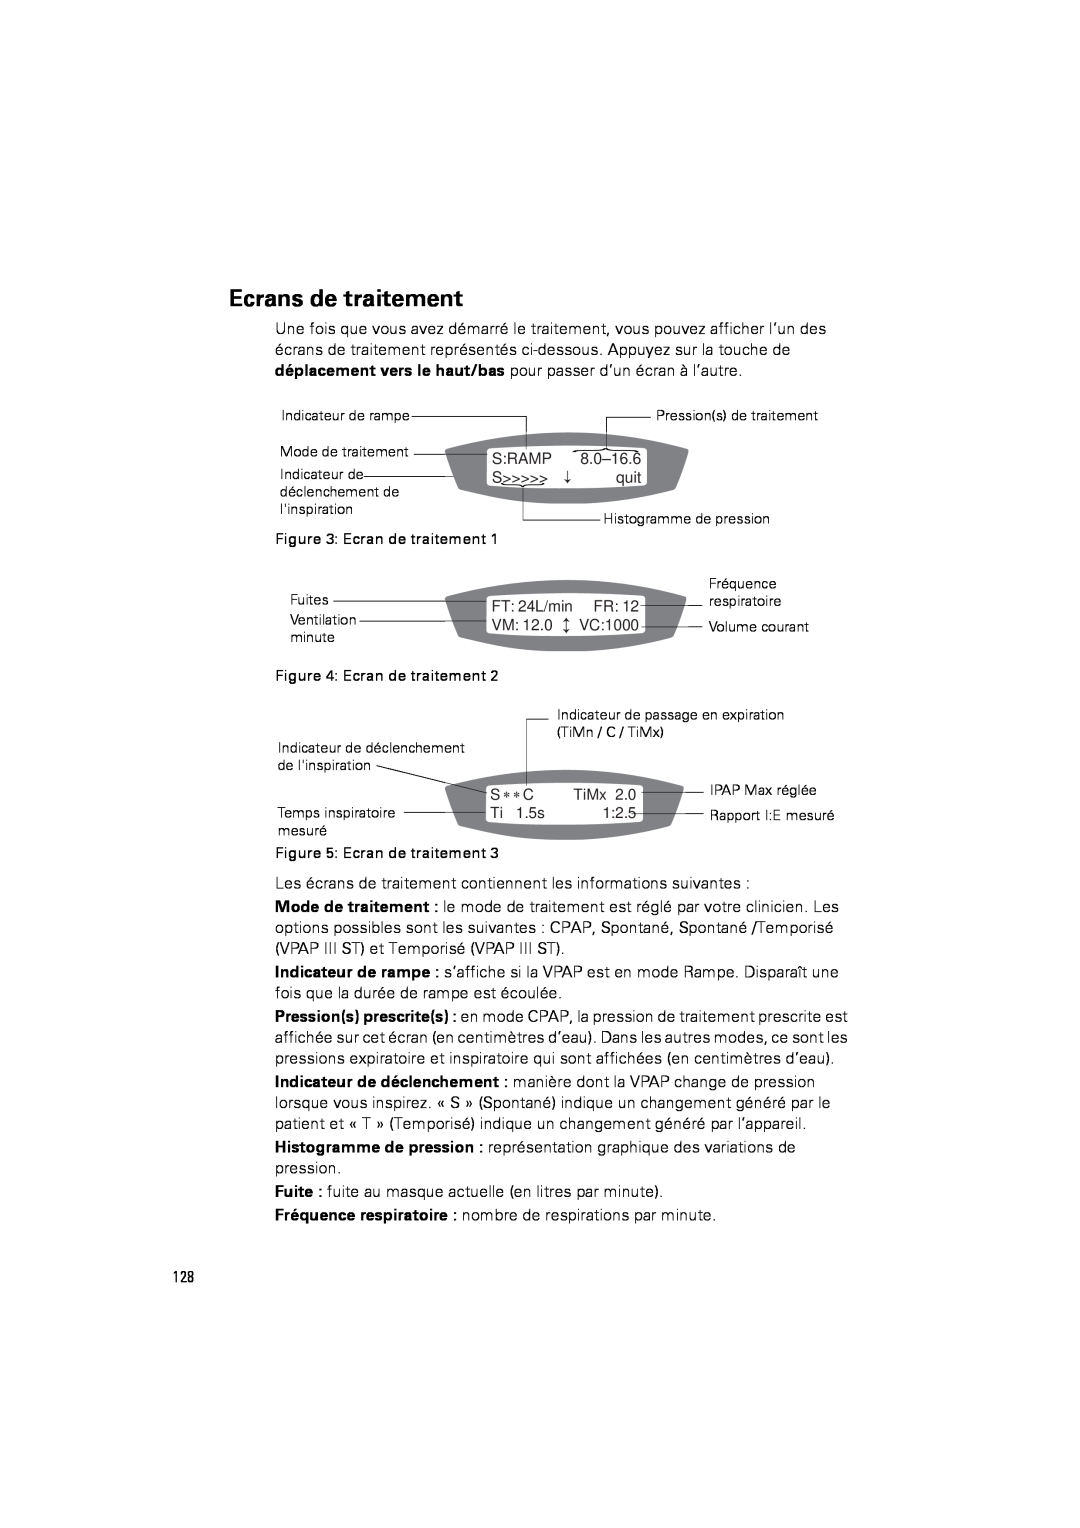 ResMed III & III ST user manual Ecrans de traitement 